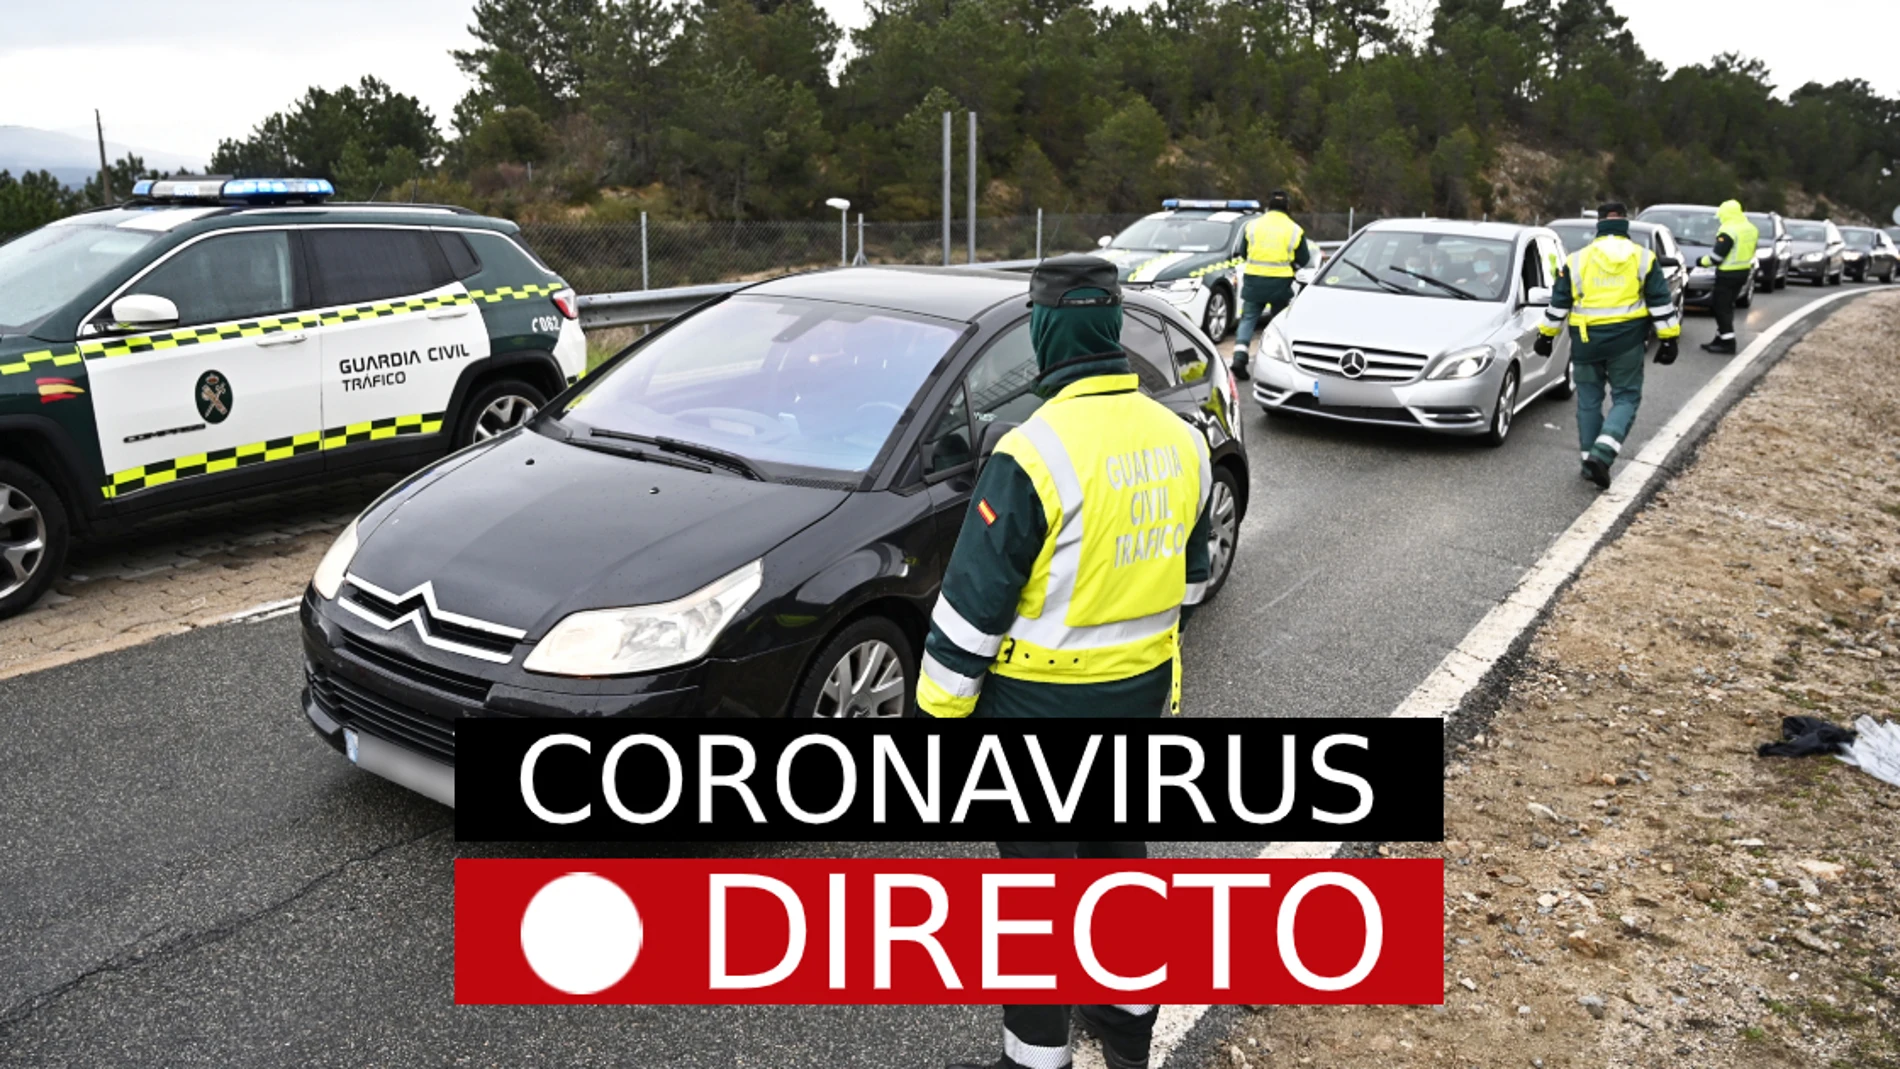 Restricciones a la movilidad, medidas y controles policiales en Semana Santa por el COVID-19 | Vacuna COVID-19 y AstraZeneca, en directo